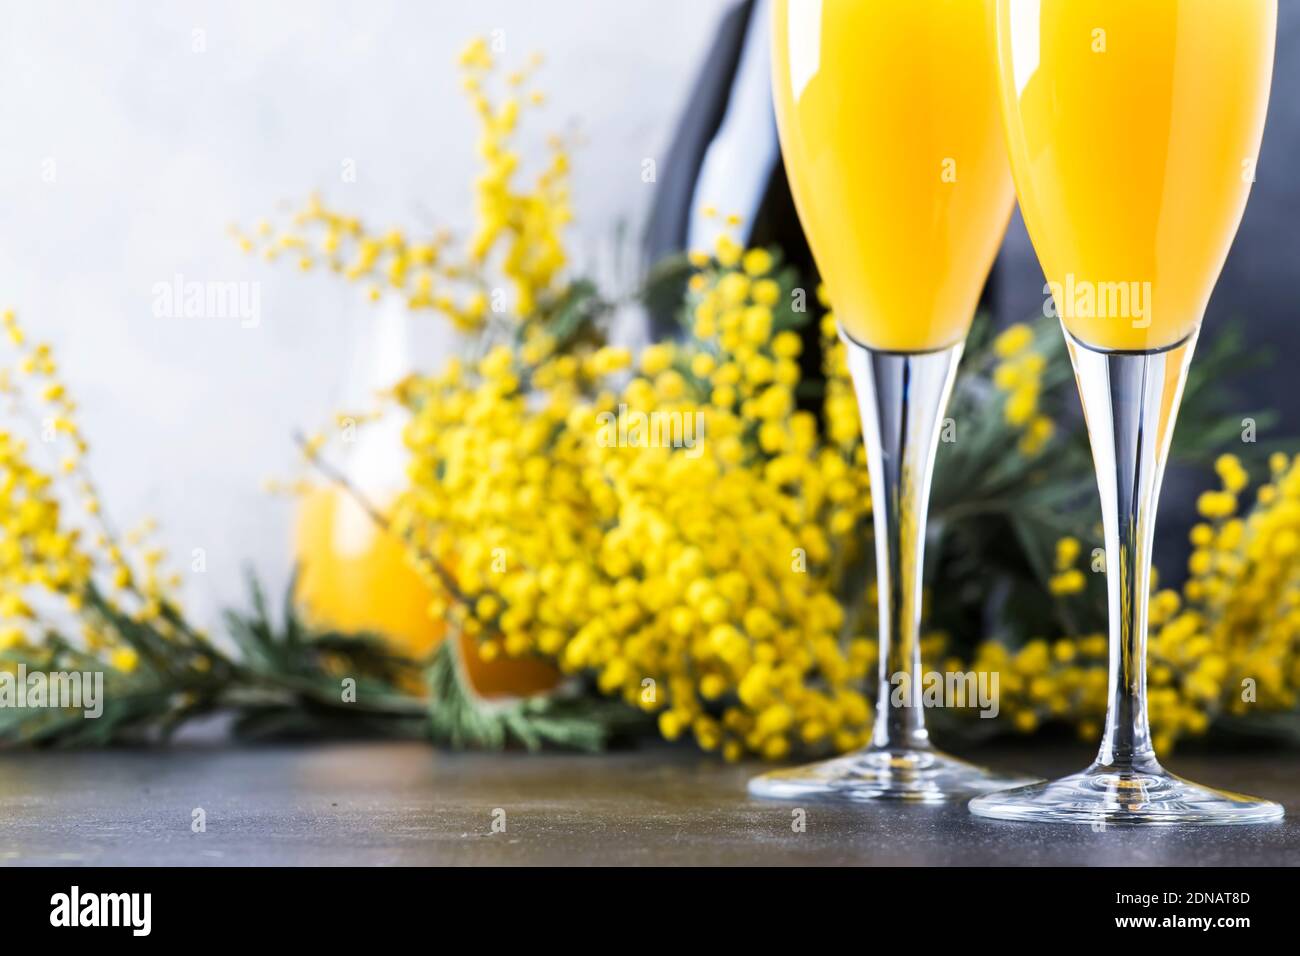 Cóctel de alcohol de mimosa con jugo de naranja y champagne frío o vino espumoso en copas, barra gris de fondo con flores de yelow Fotografía de stock - Alamy